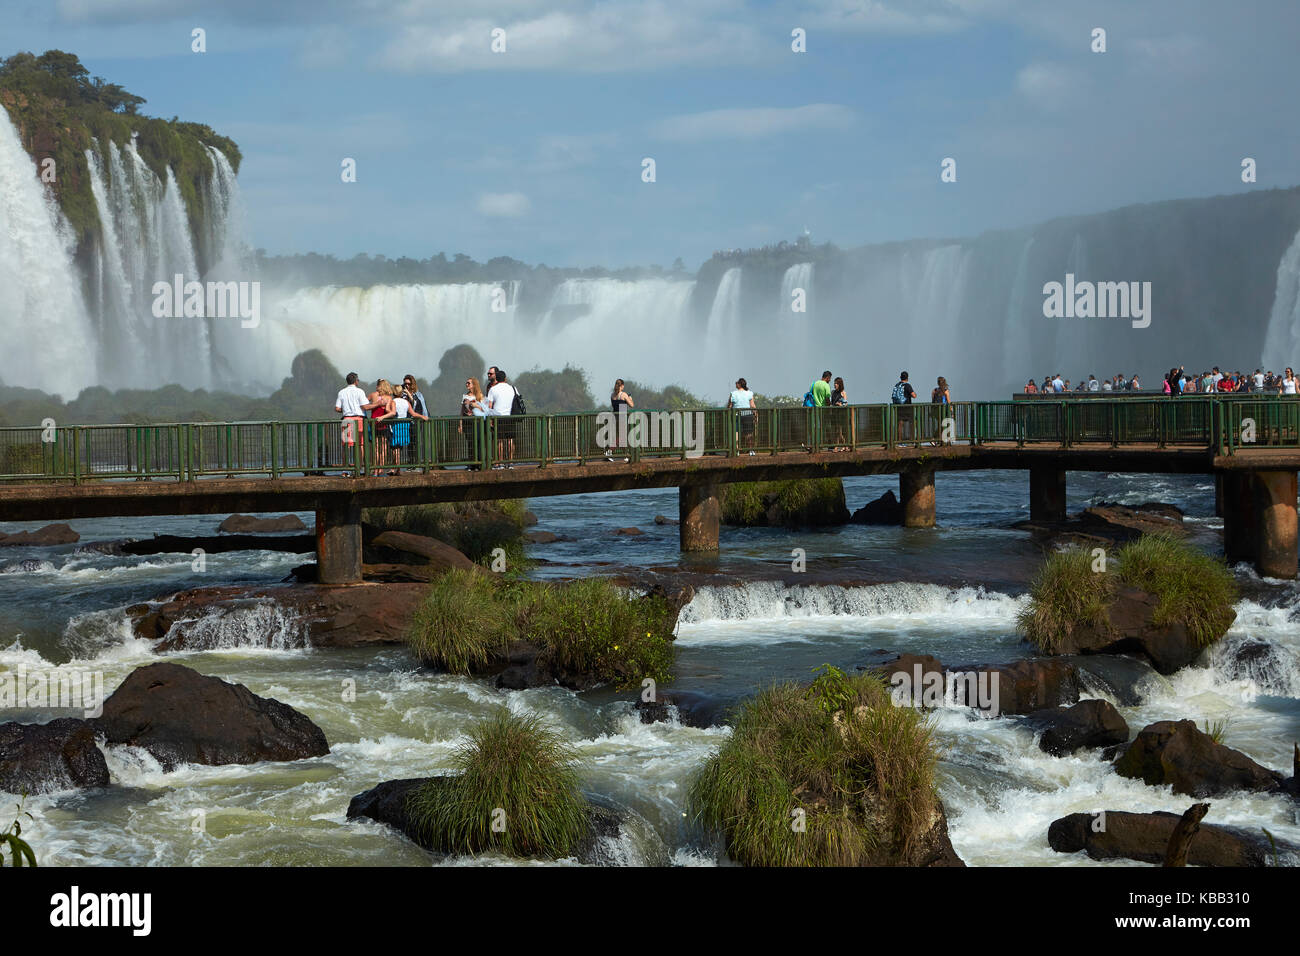 Turistas en plataforma de observación en el lado de Brasil de las Cataratas del Iguazú, frontera Brasil - Argentina, América del Sur Foto de stock